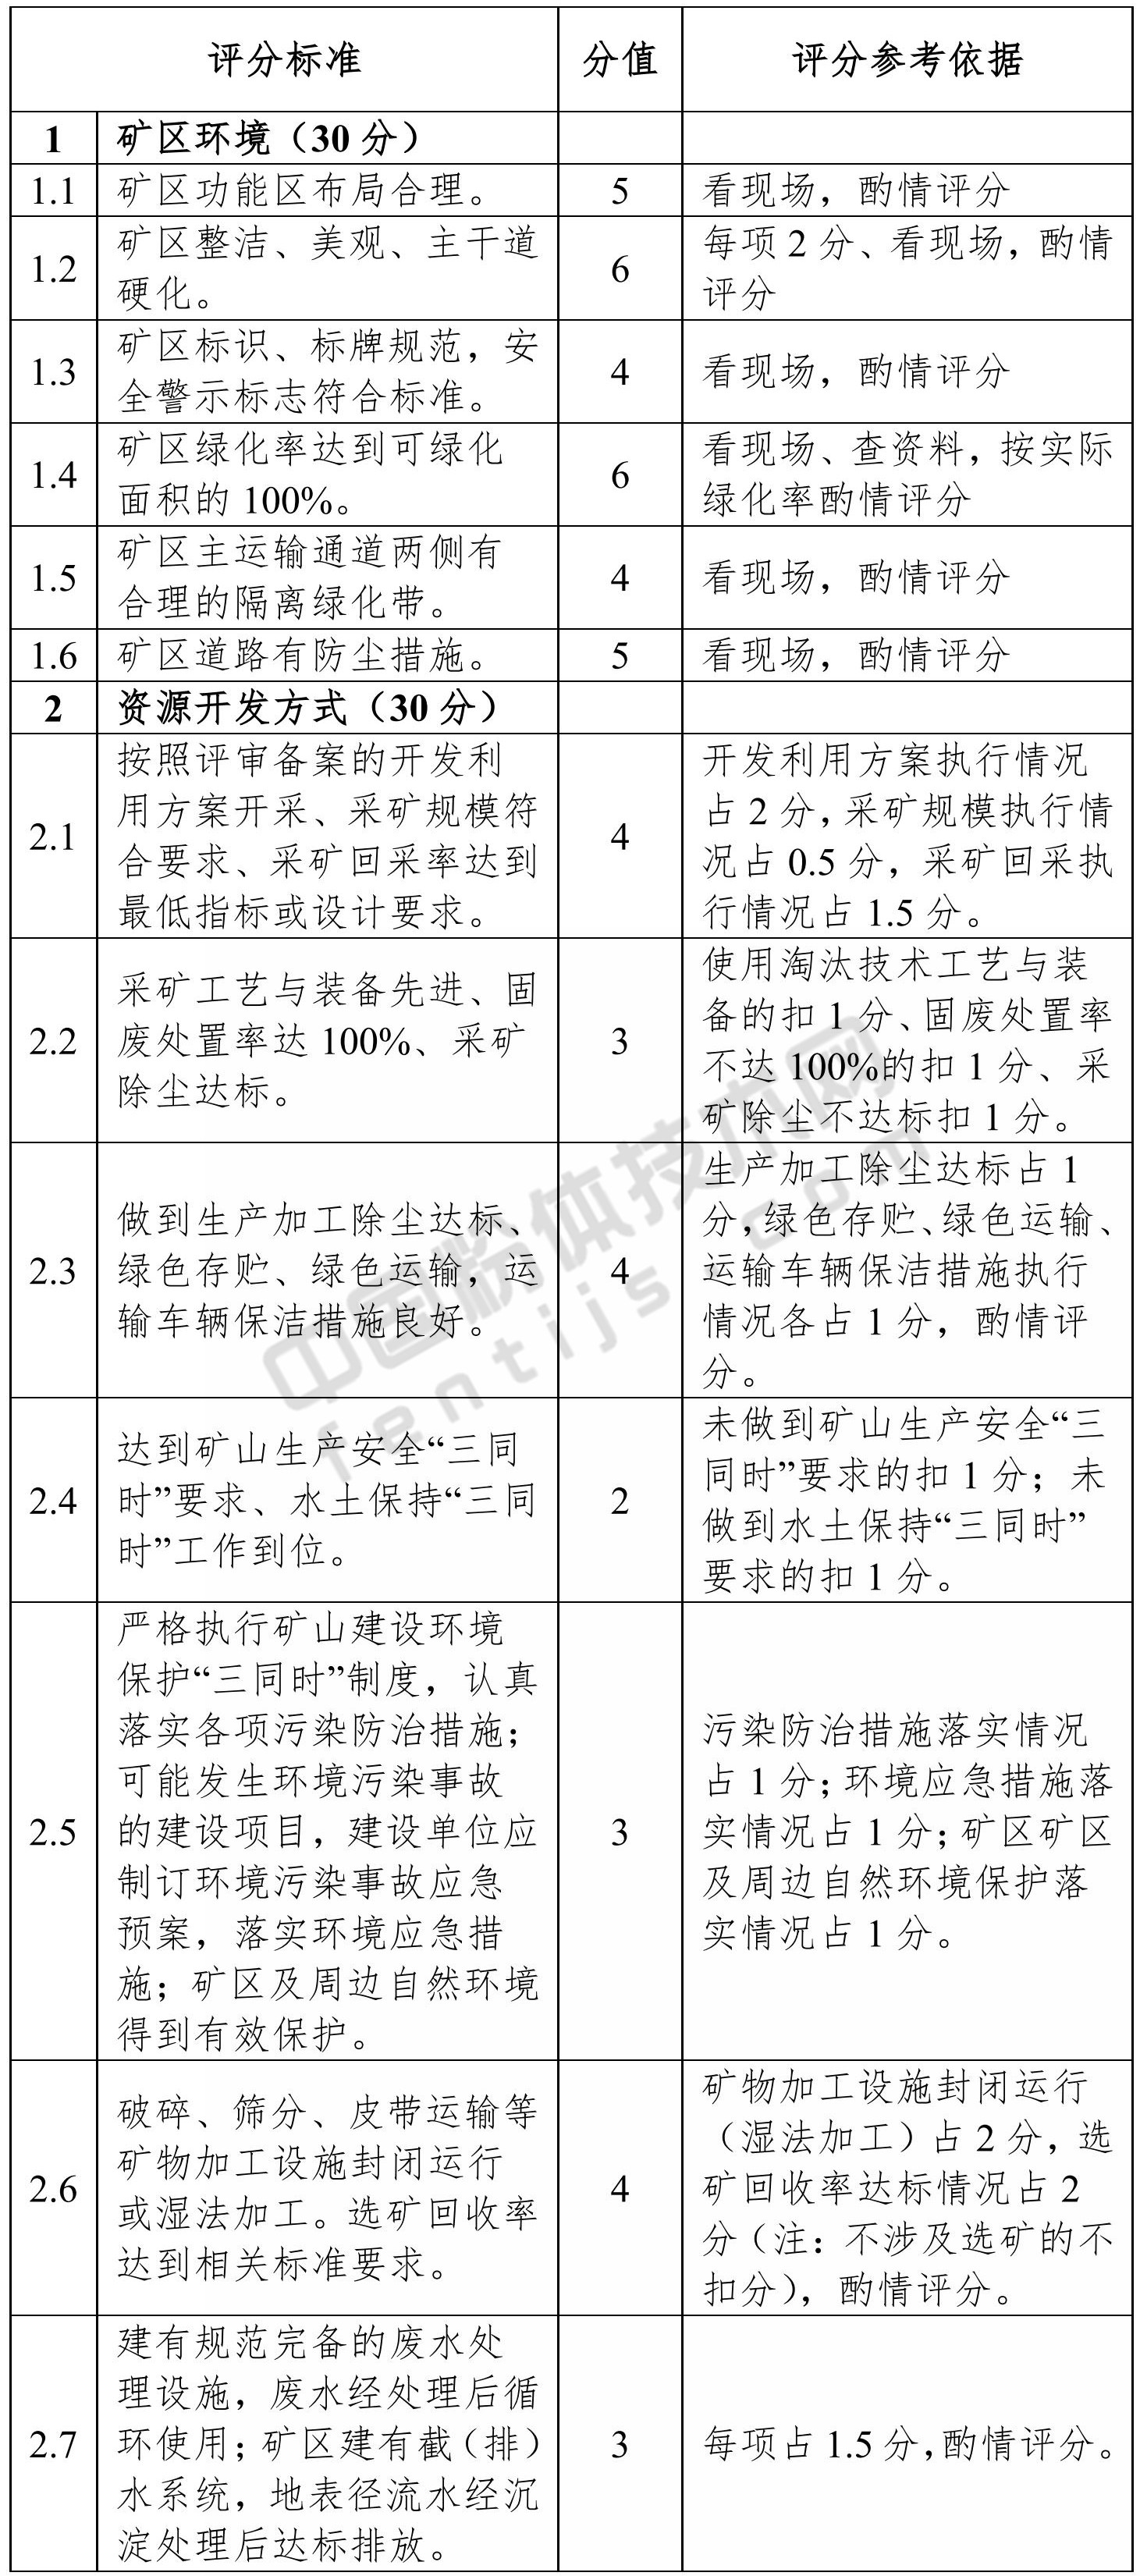 广西自治区级绿色矿山考核评分标准